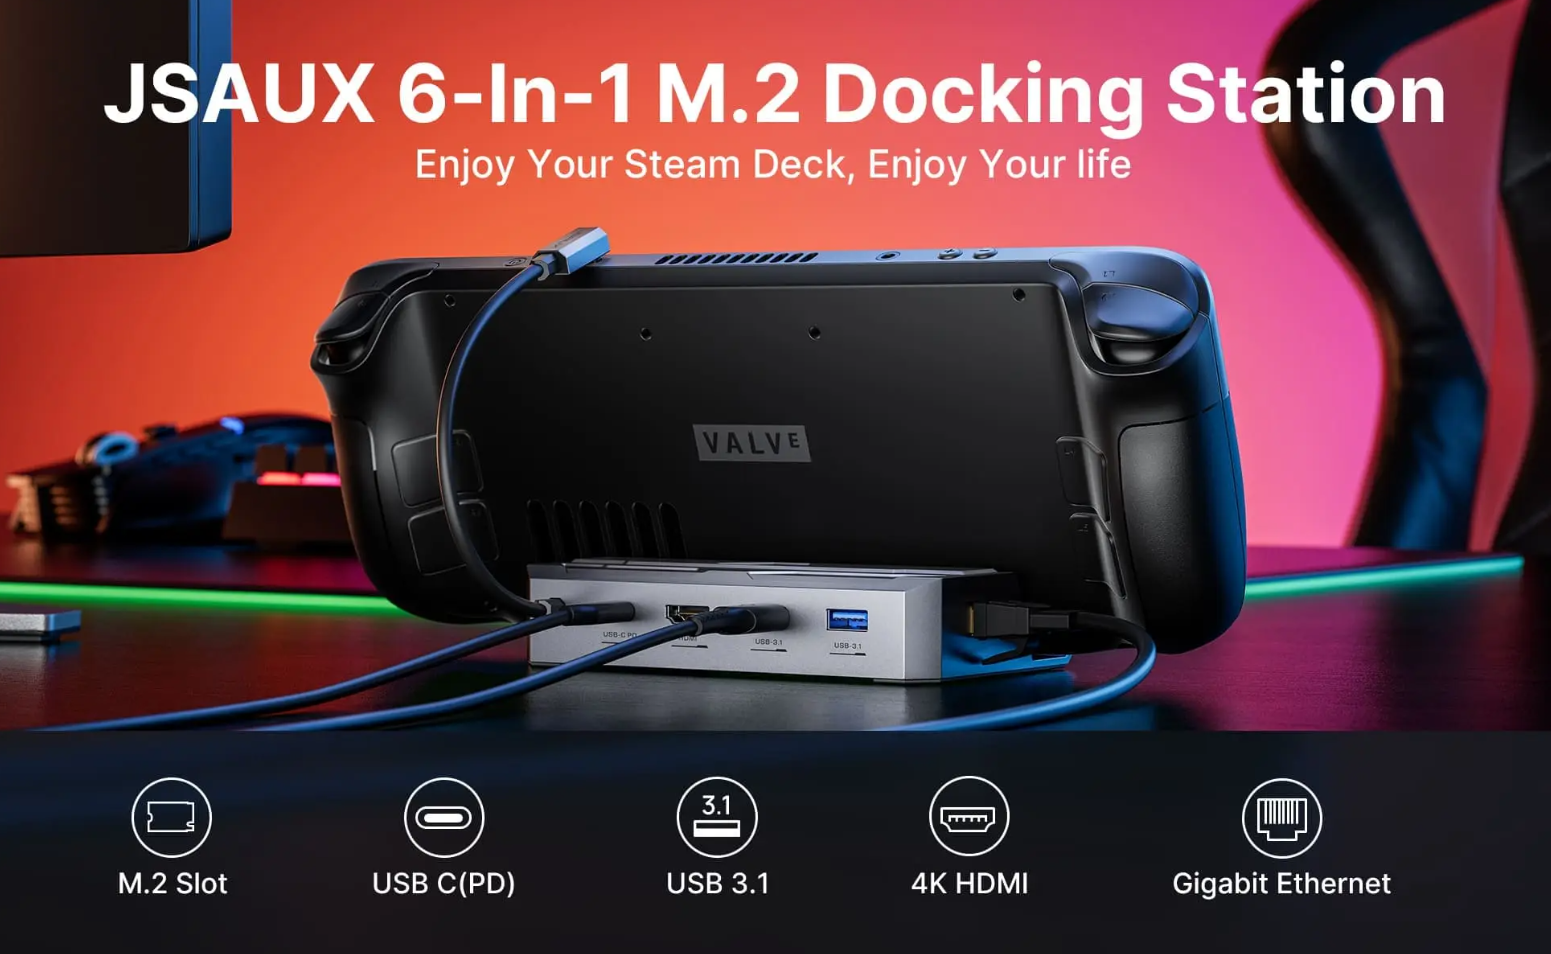 JSAUX Announces Steam Deck Docking Stations 